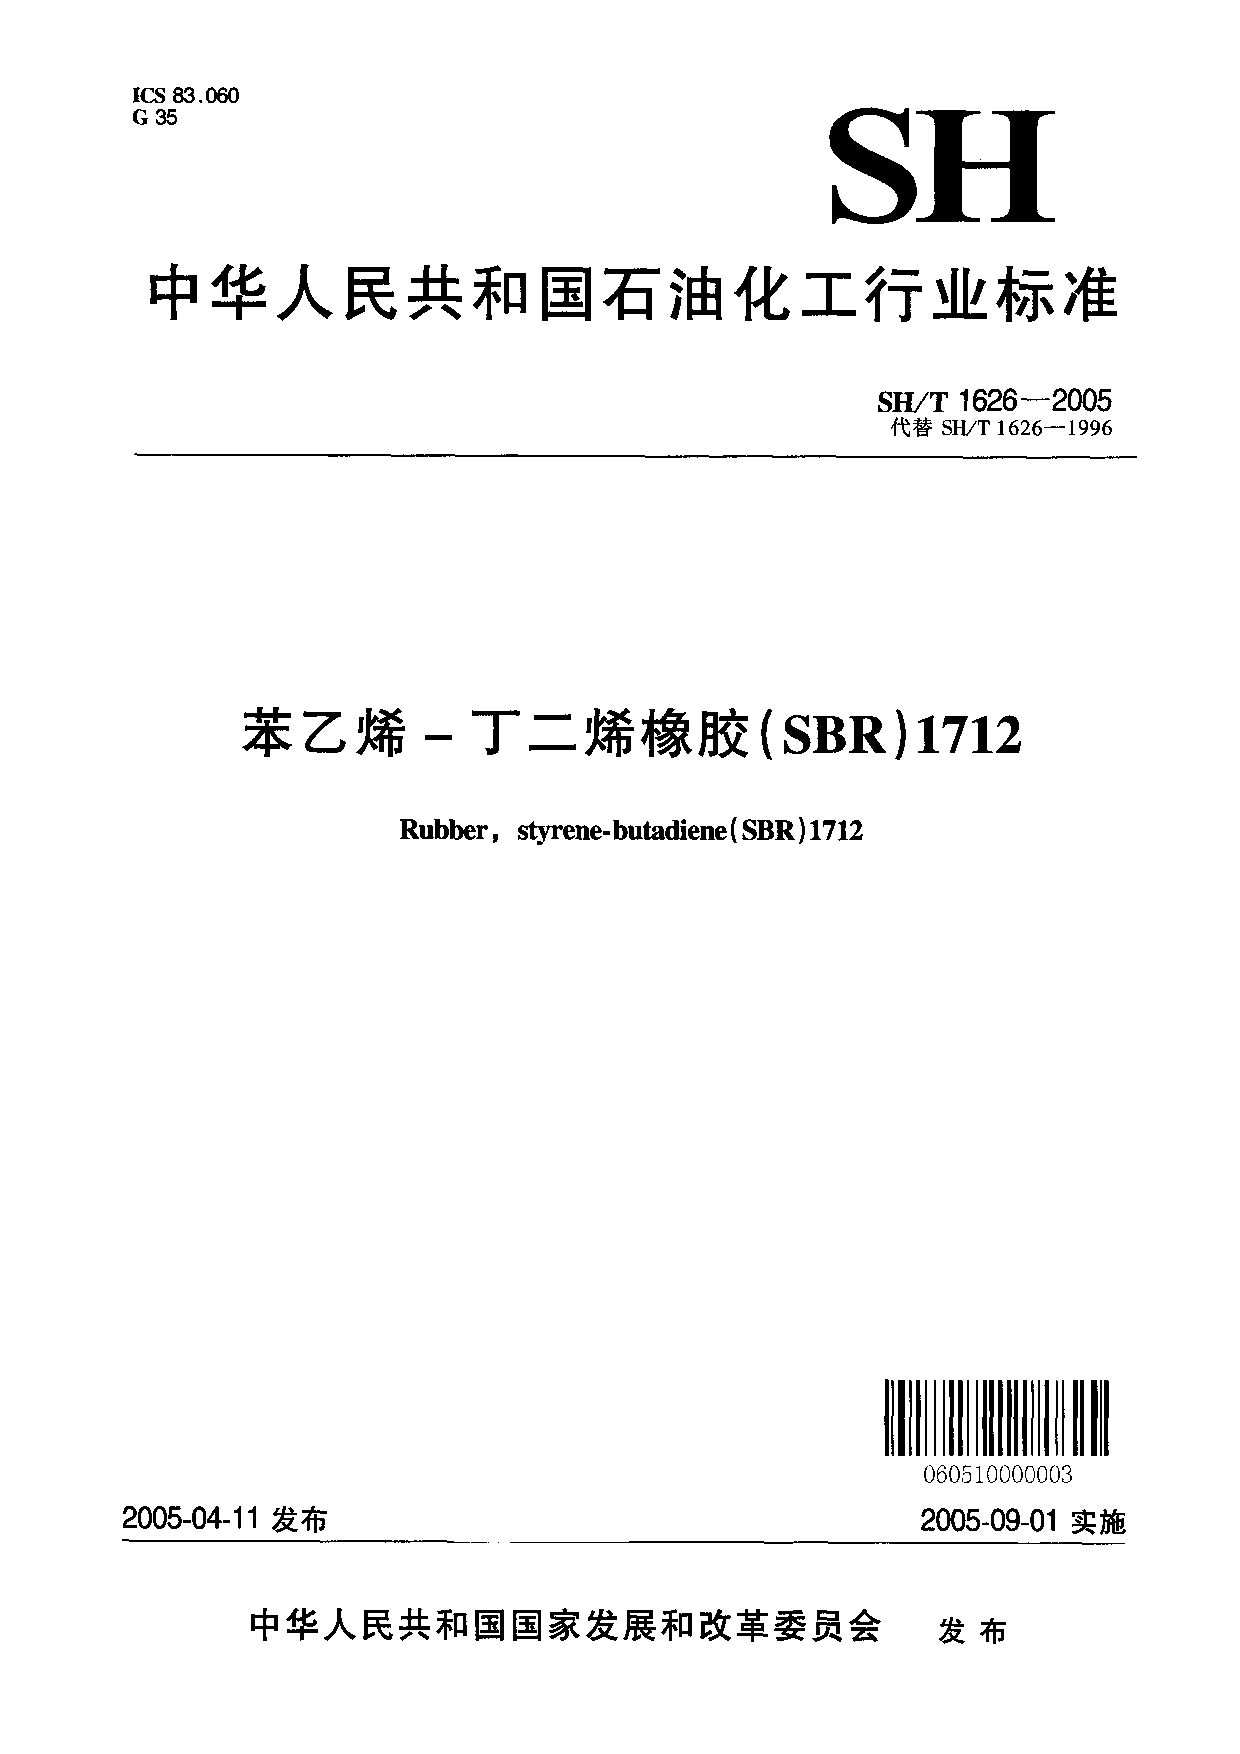 SH/T 1626-2005封面图